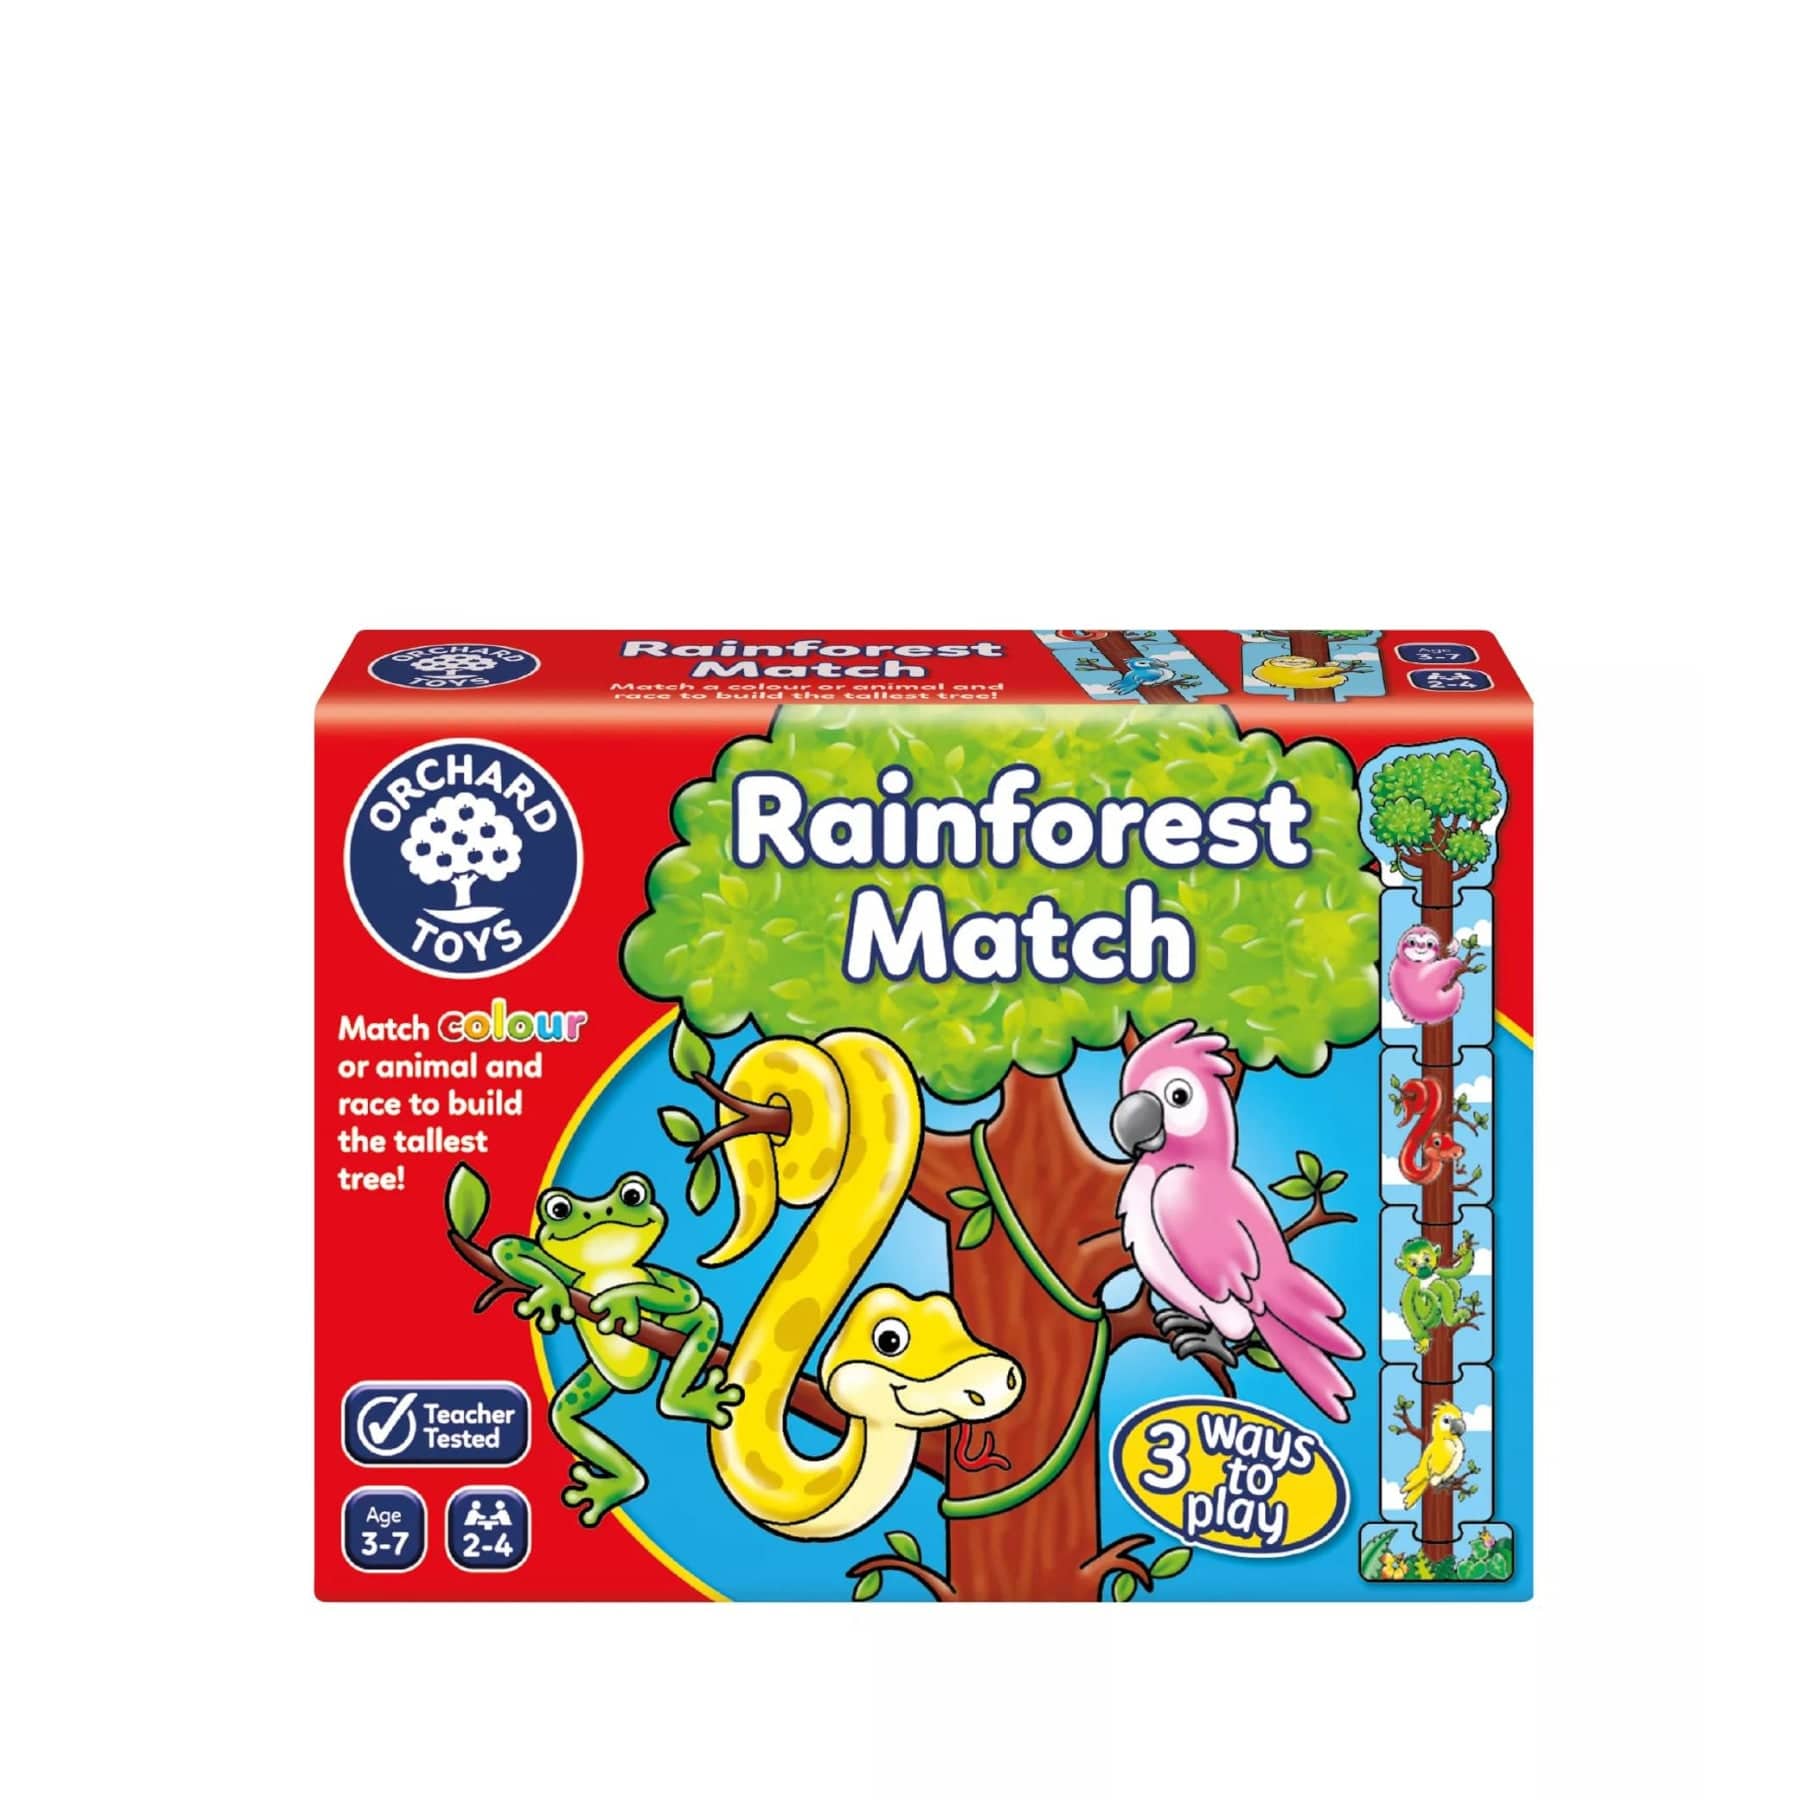 Rainforest match game